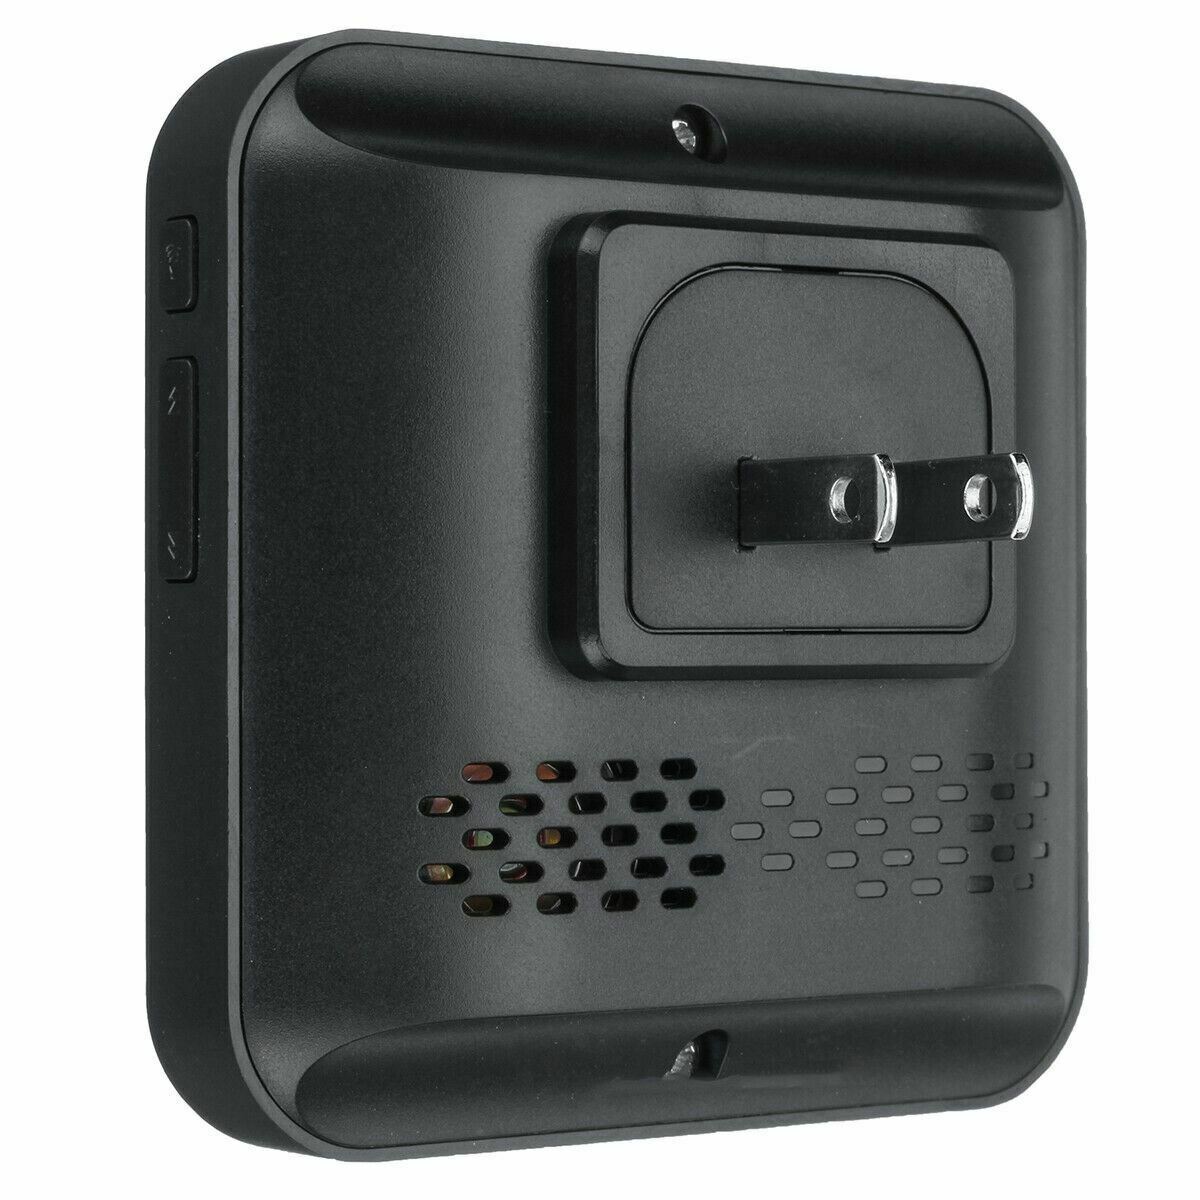 Wireless WiFi Video HD Camera Two-Way Talk Phone PIR Smart Doorbell Door Bell